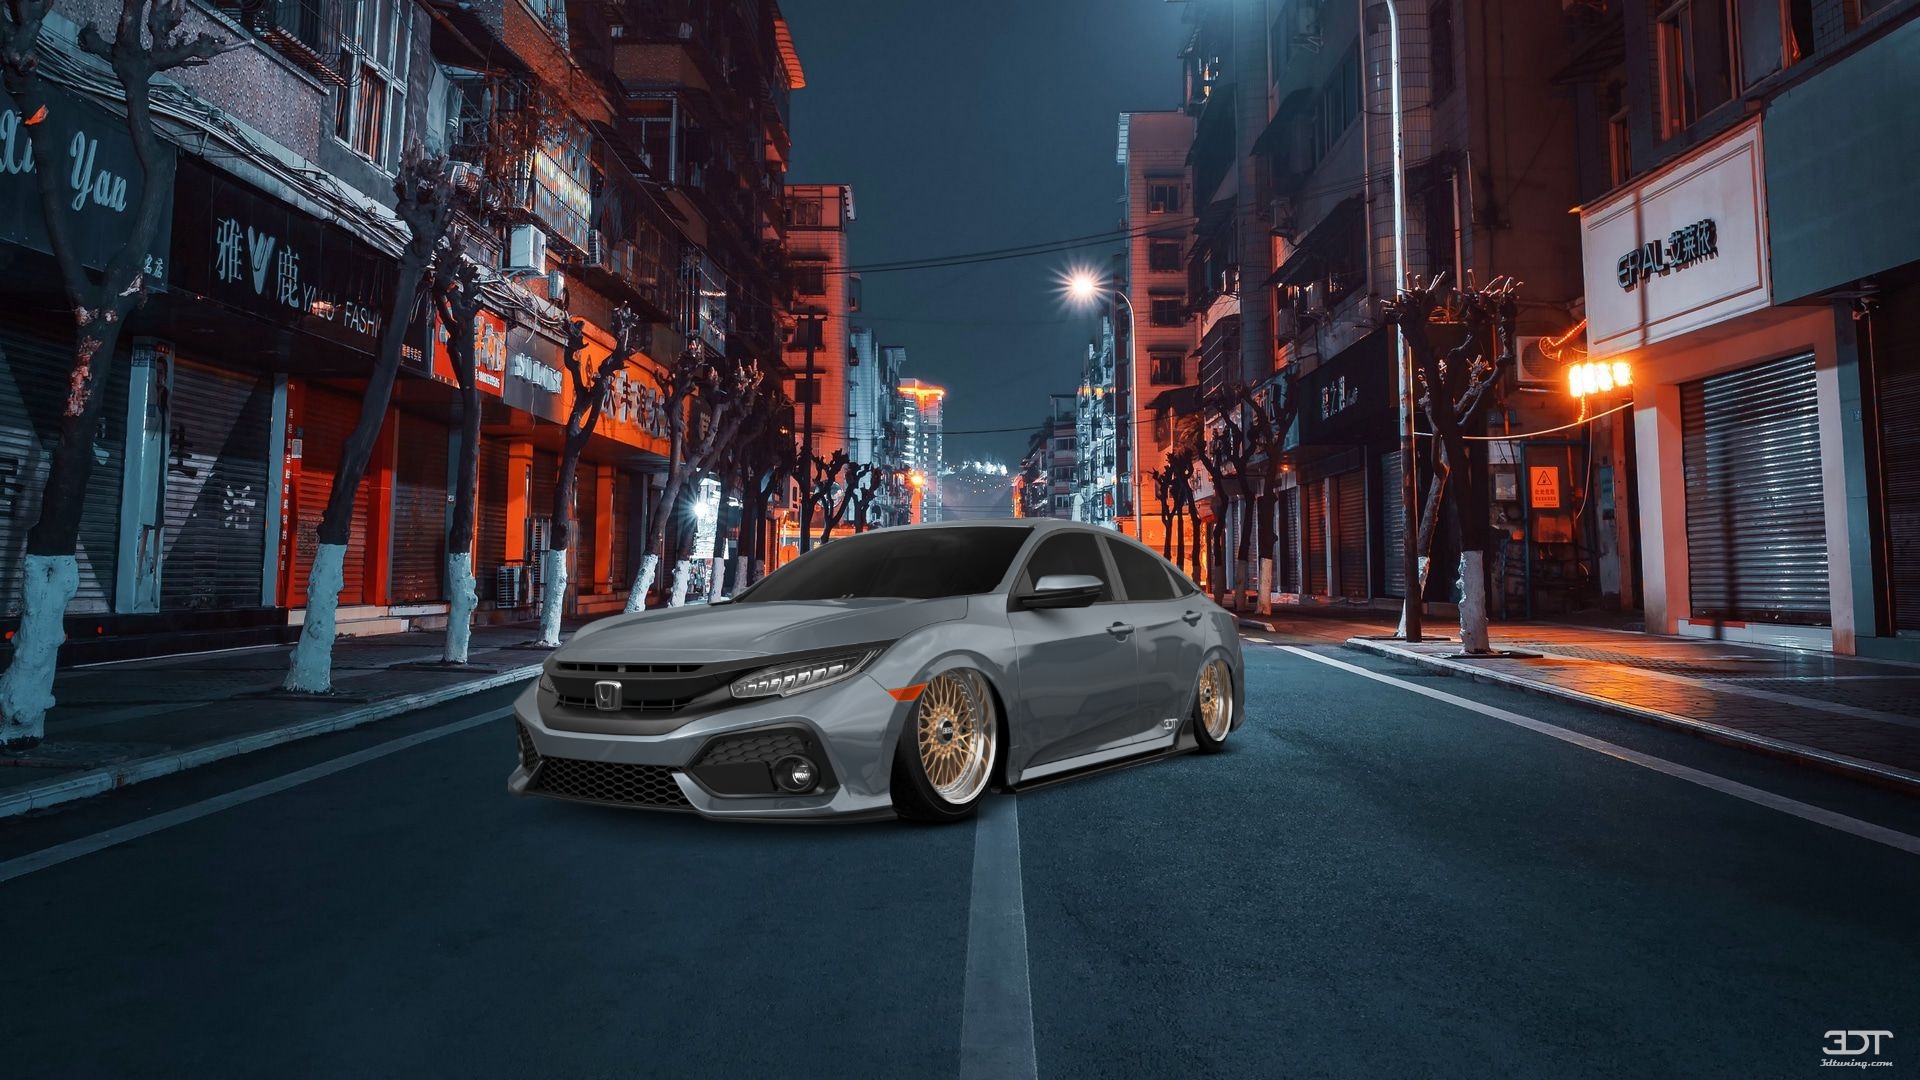 Honda Civic Sedan 2016